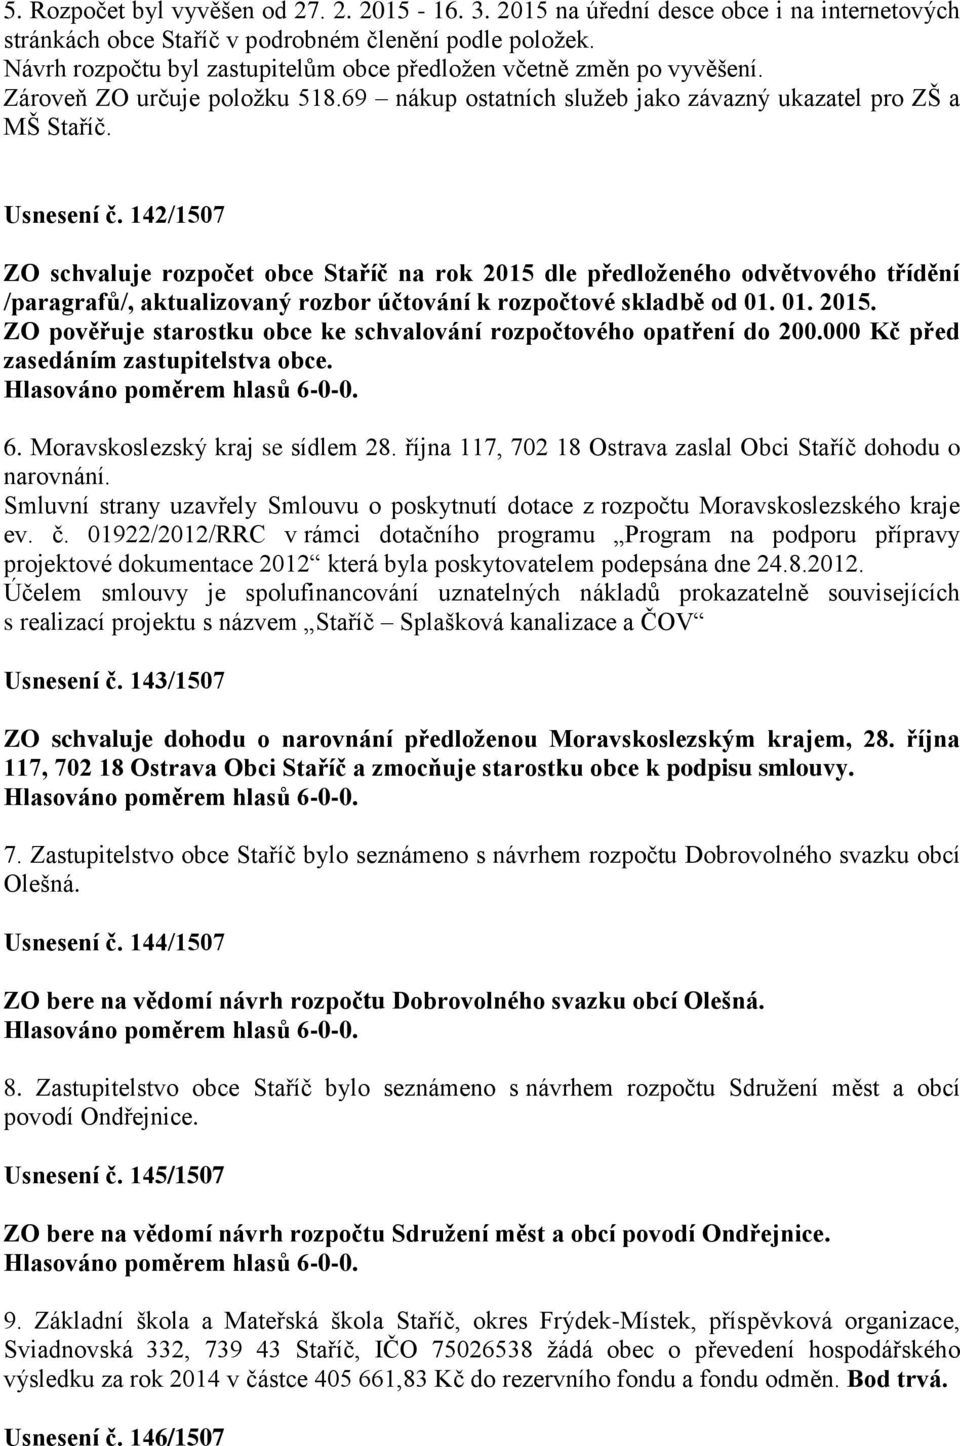 142/1507 ZO schvaluje rozpočet obce Staříč na rok 2015 dle předloženého odvětvového třídění /paragrafů/, aktualizovaný rozbor účtování k rozpočtové skladbě od 01. 01. 2015. ZO pověřuje starostku obce ke schvalování rozpočtového opatření do 200.